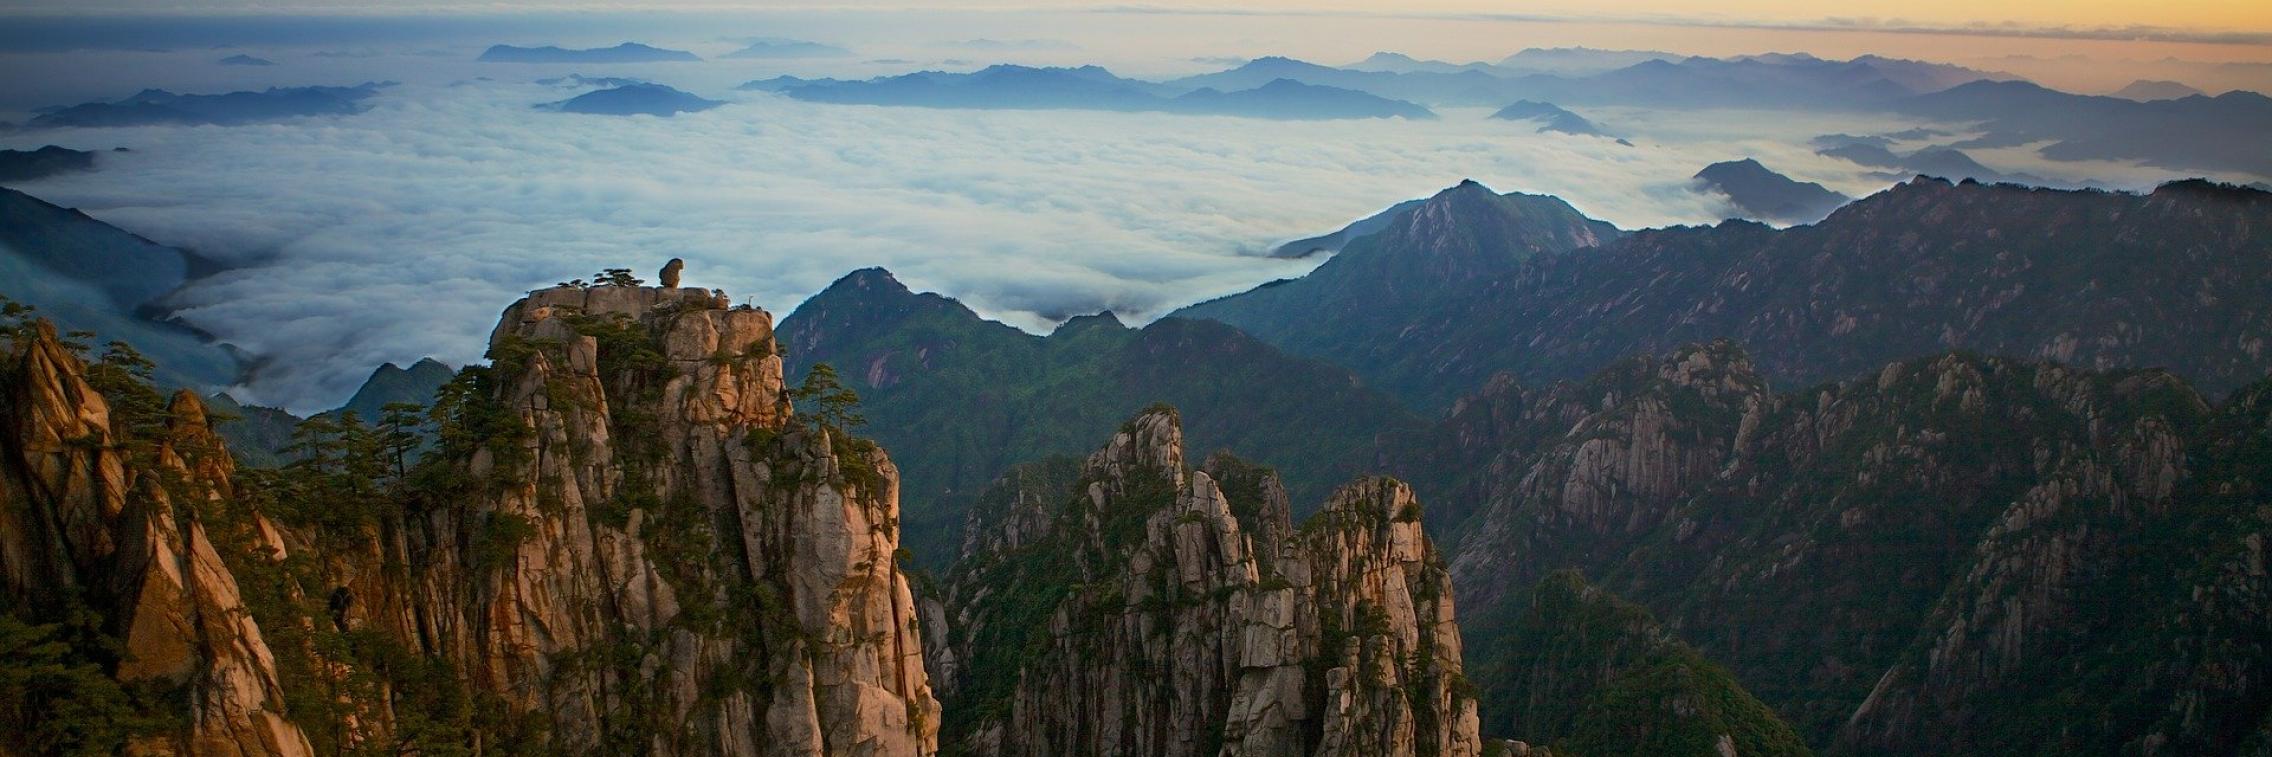 Yellow Mountains, China